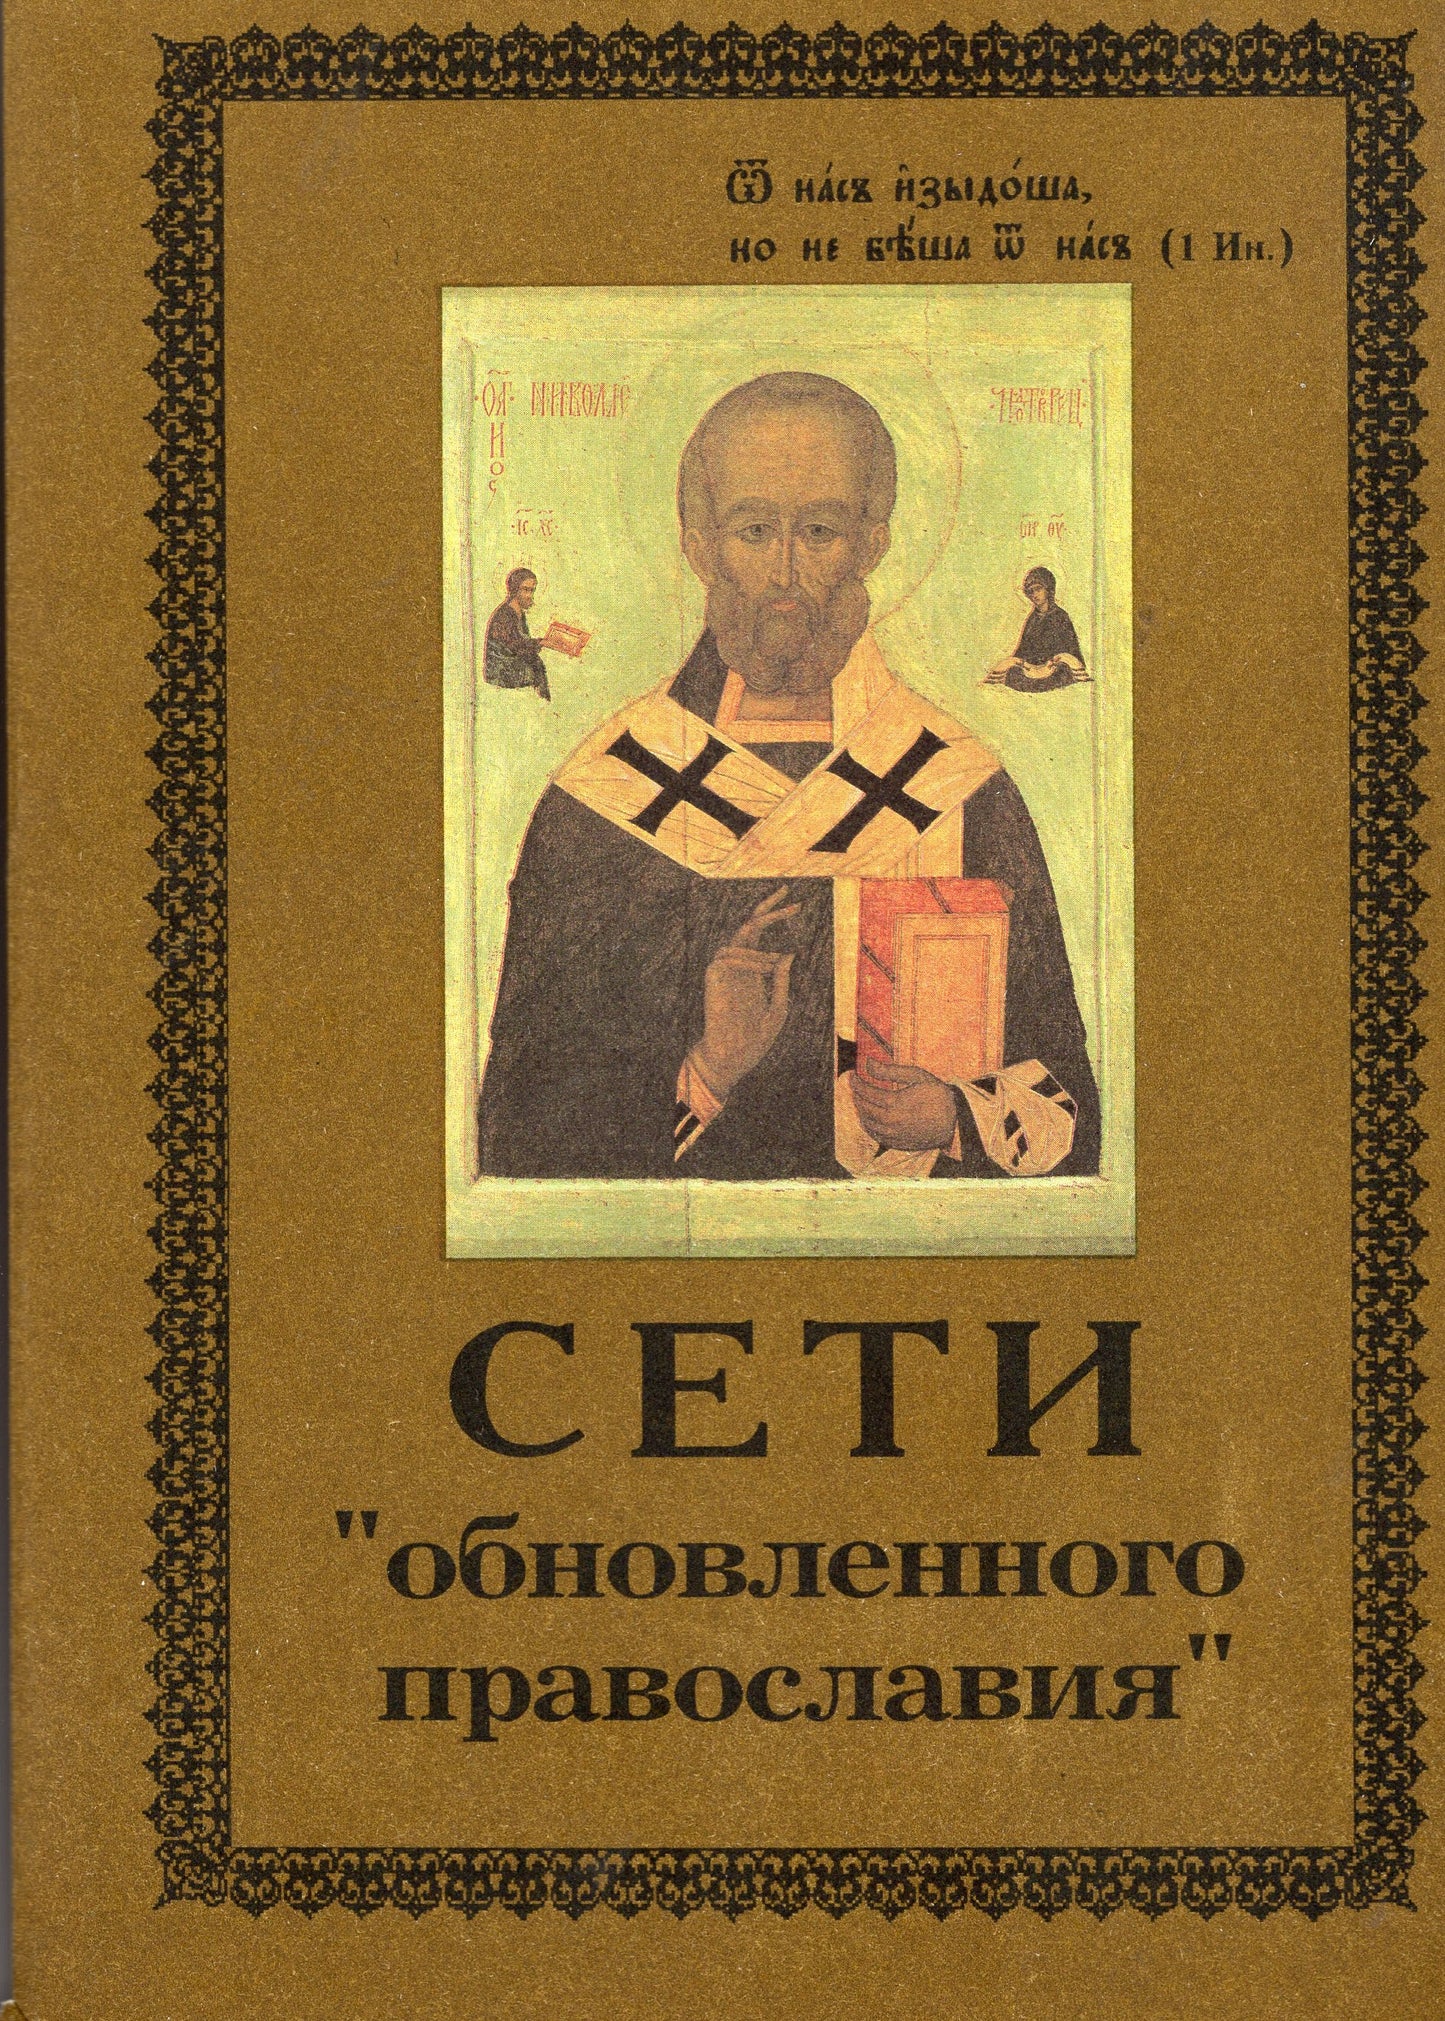 Сети обновленного православия